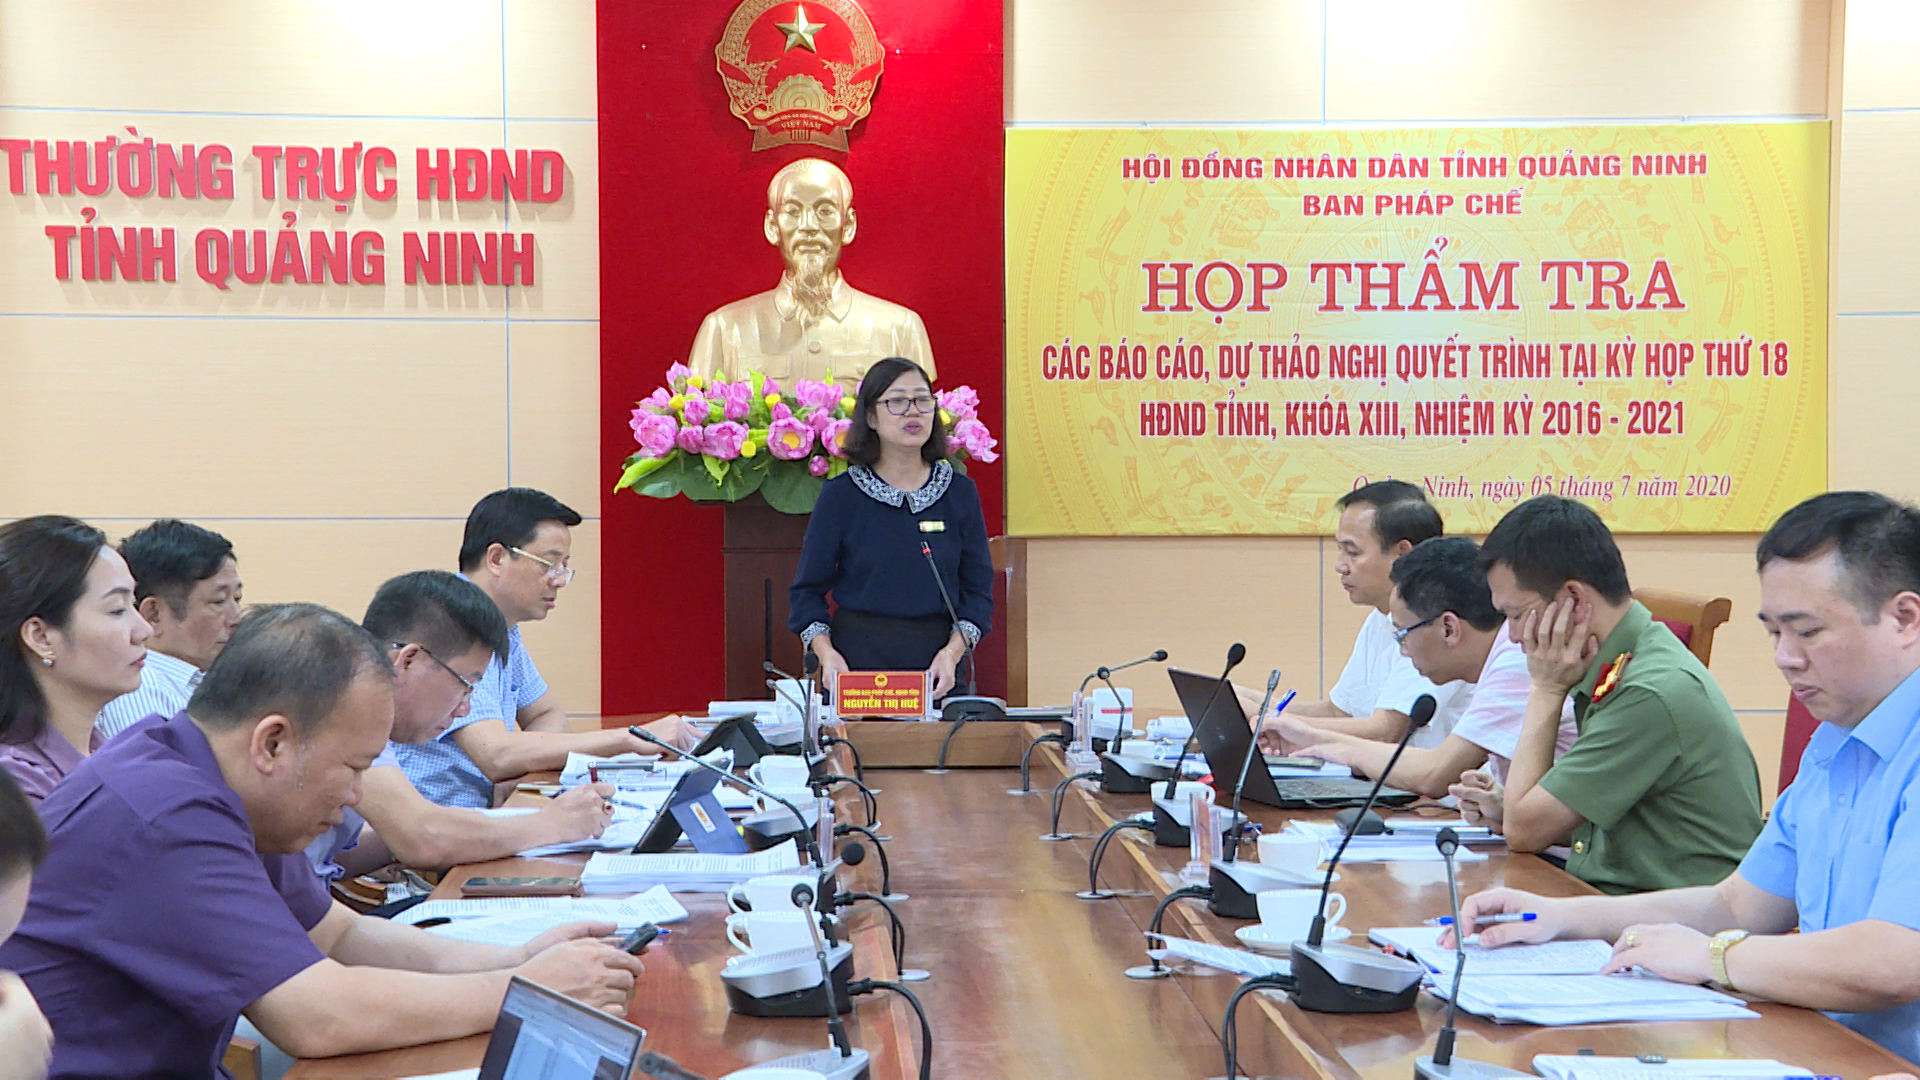 Đồng chí Nguyễn Thị Huệ, trưởng Ban Pháp chễ HĐND tỉnh chỉ đạo tại buổi thẩm tra